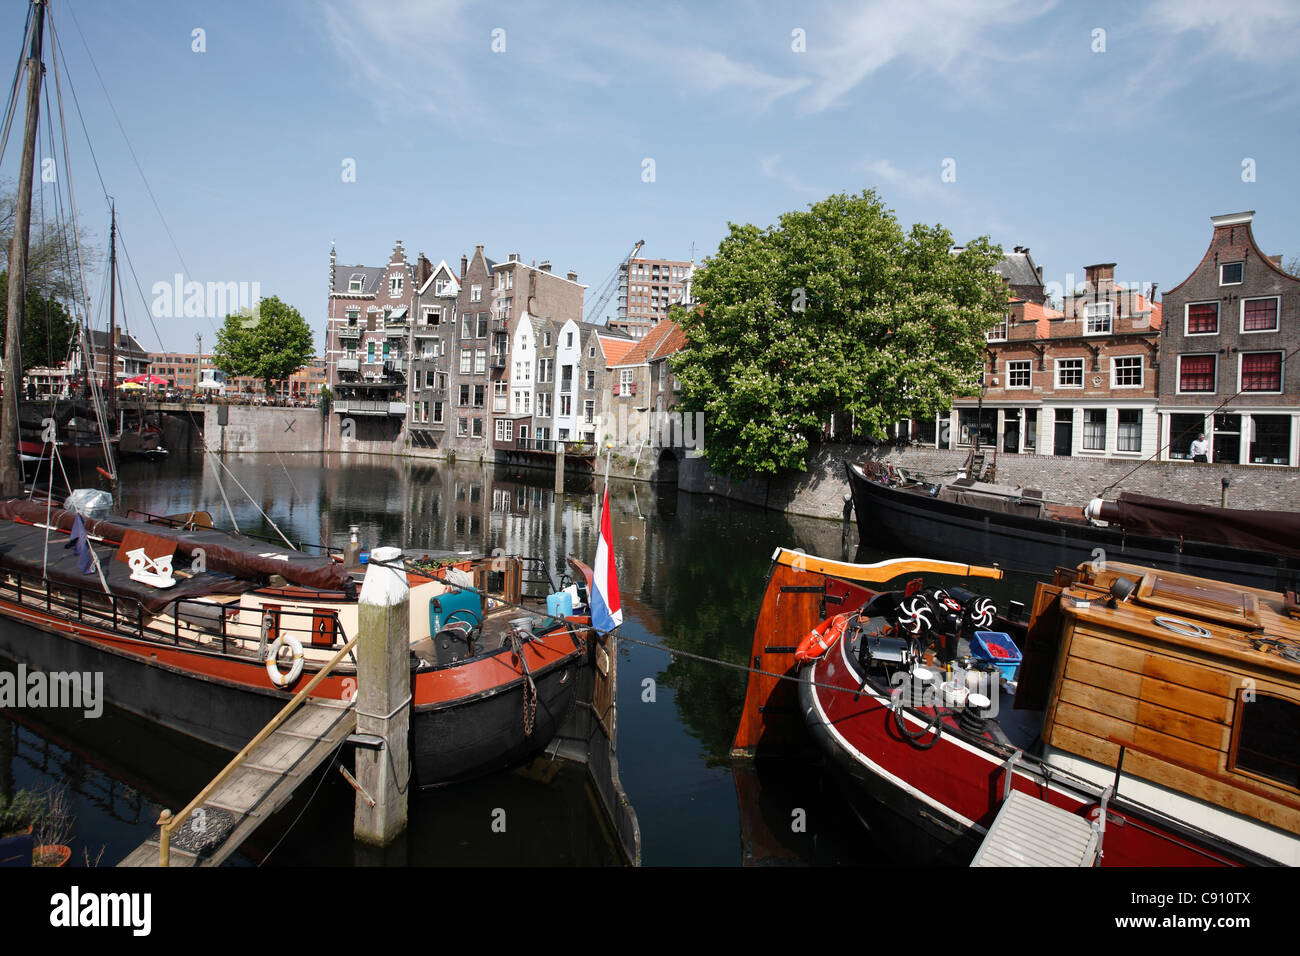 Kanäle machen einen erheblichen Teil des das Verkehrssystem in viele Städte und Städte in den Niederlanden. Aufgrund seiner tief liegend Stockfoto